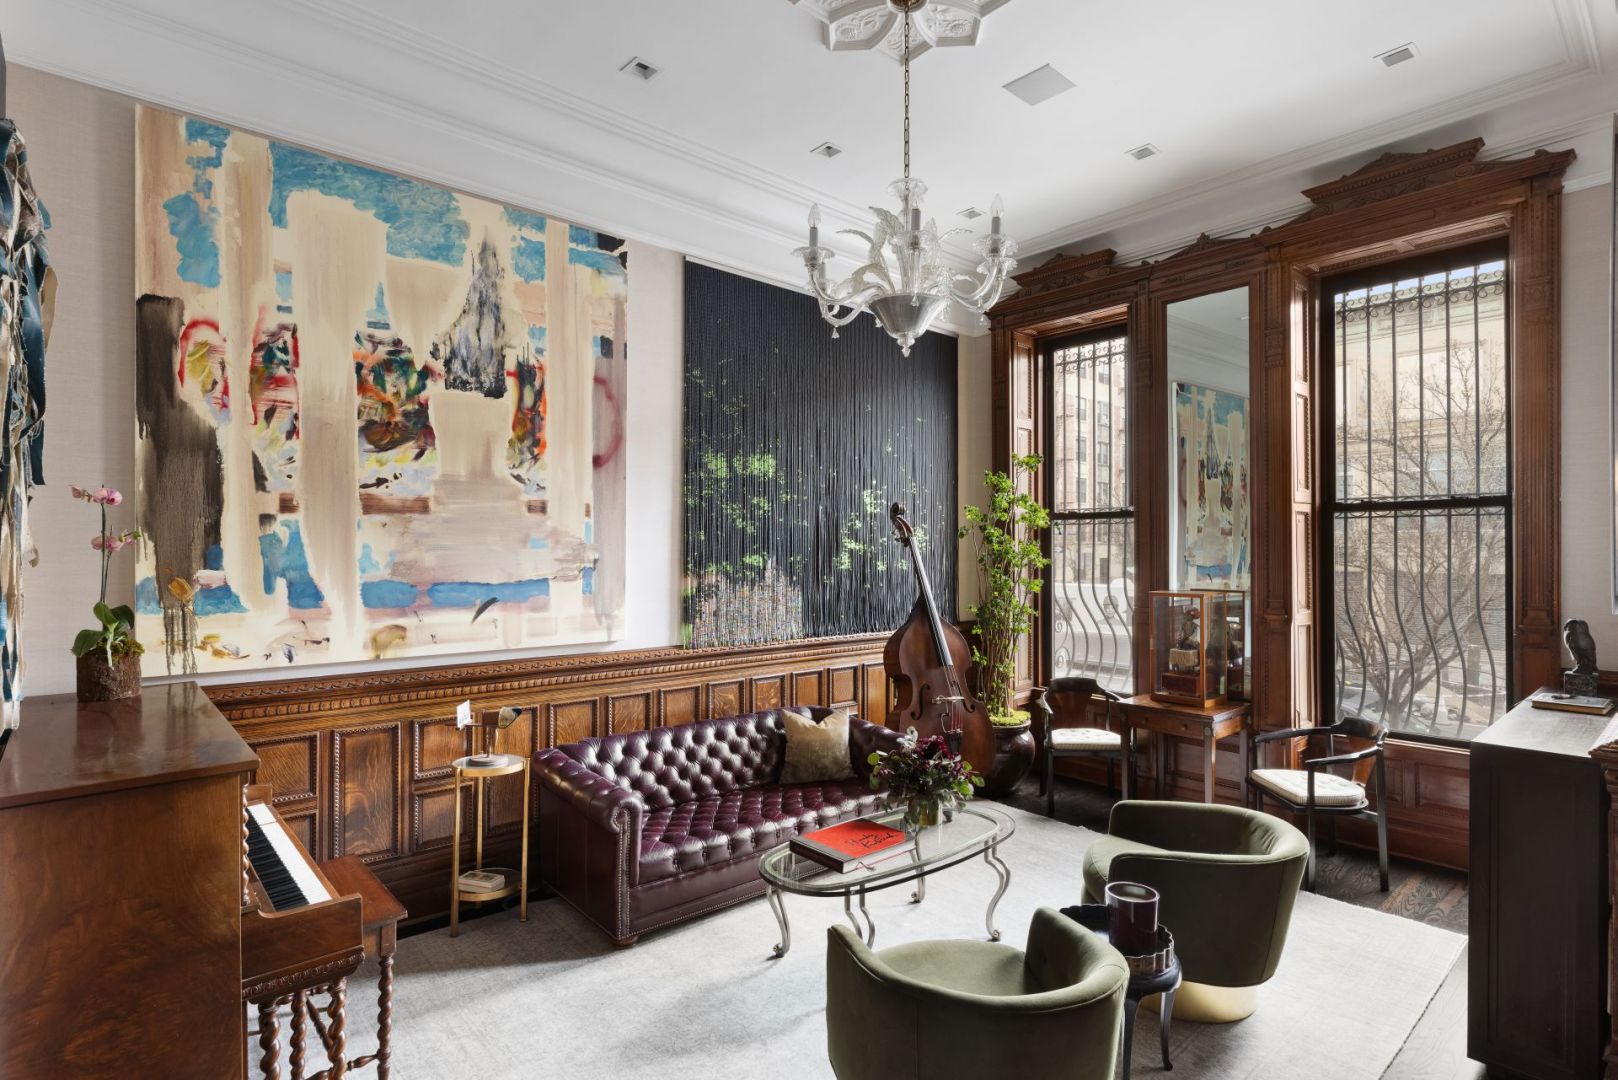 Dom aktora Neila Patricka Harrisa w nowojorskim Harlemie ma ponad 700 m2. został urządzony w eklektyczny, awangardowym stylu. Klasa! Źródło: TopTenRealEstatesDeals.com